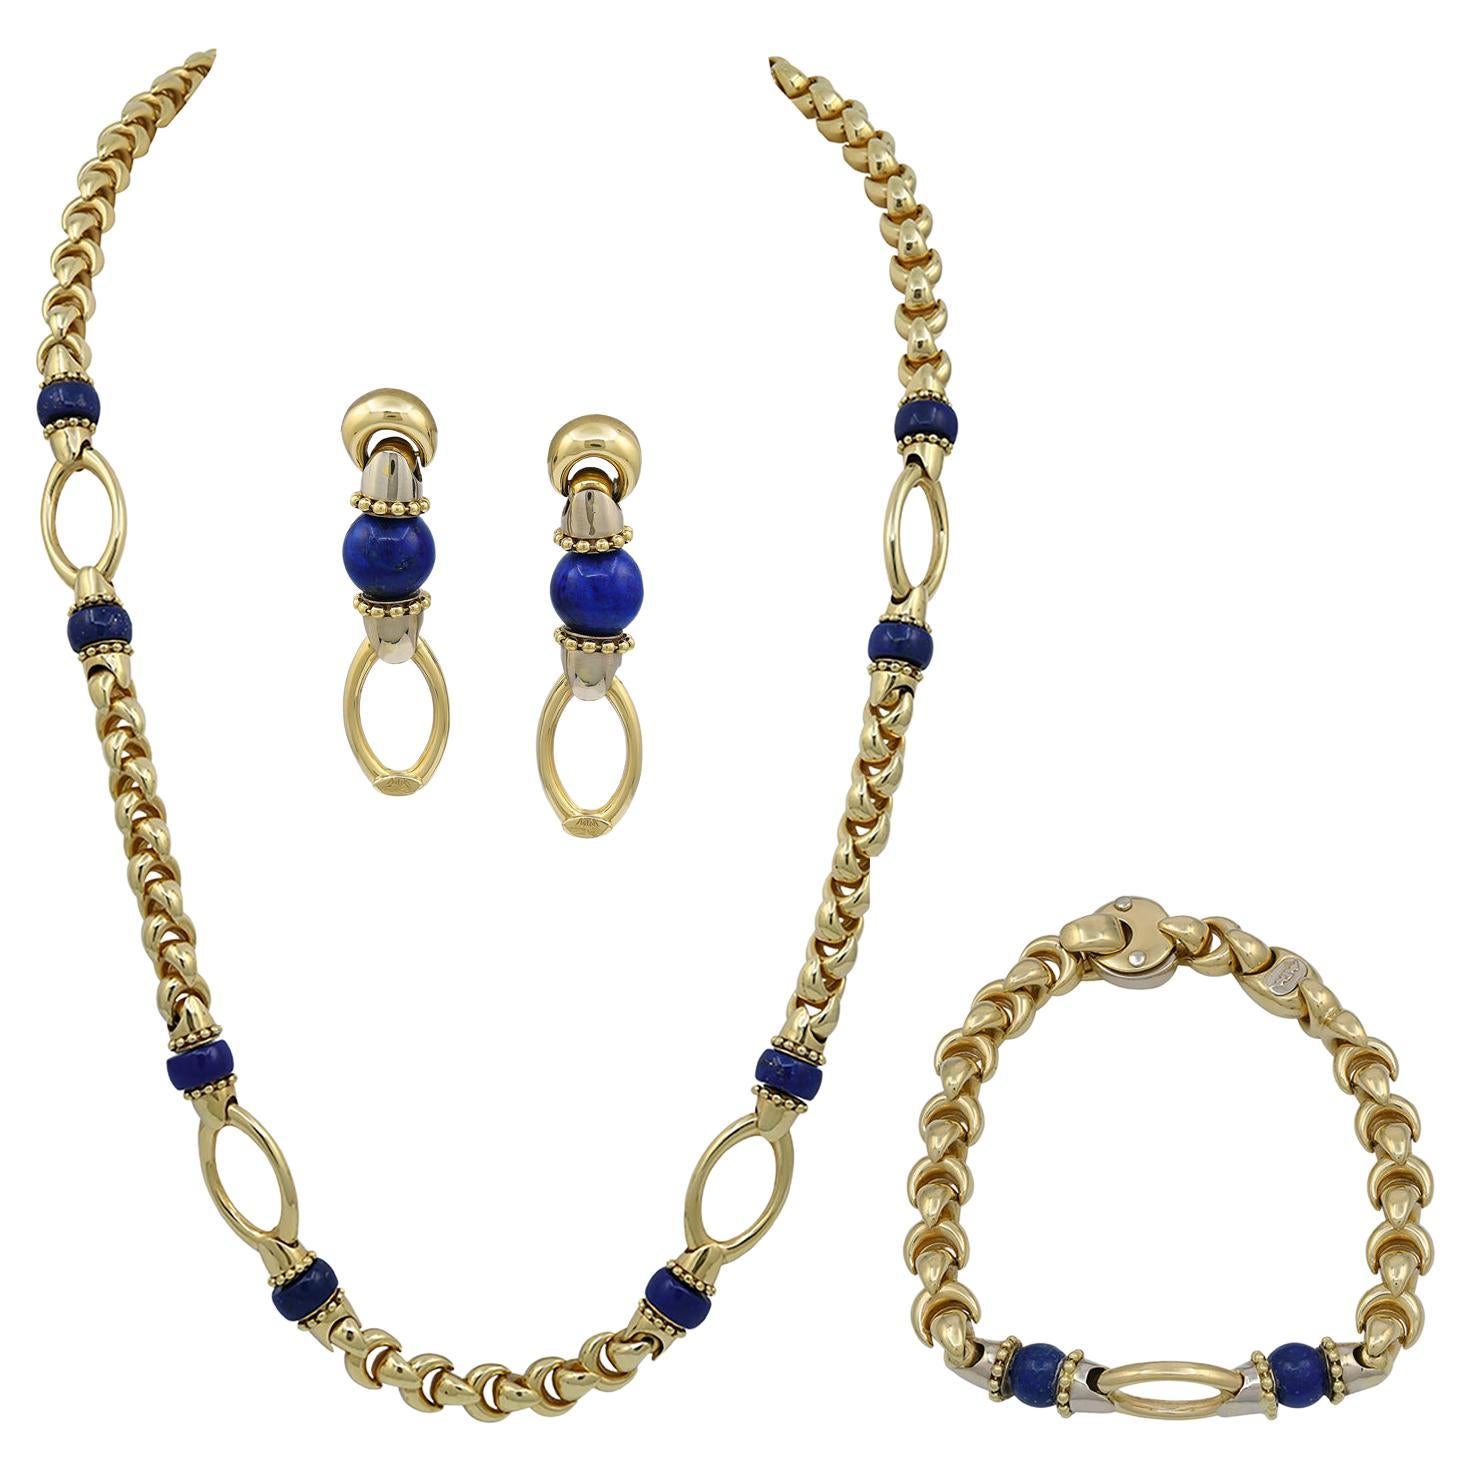 Lapis Lazuli Necklace Earrings Bracelet Jewelry Set in 18k Yellow Gold